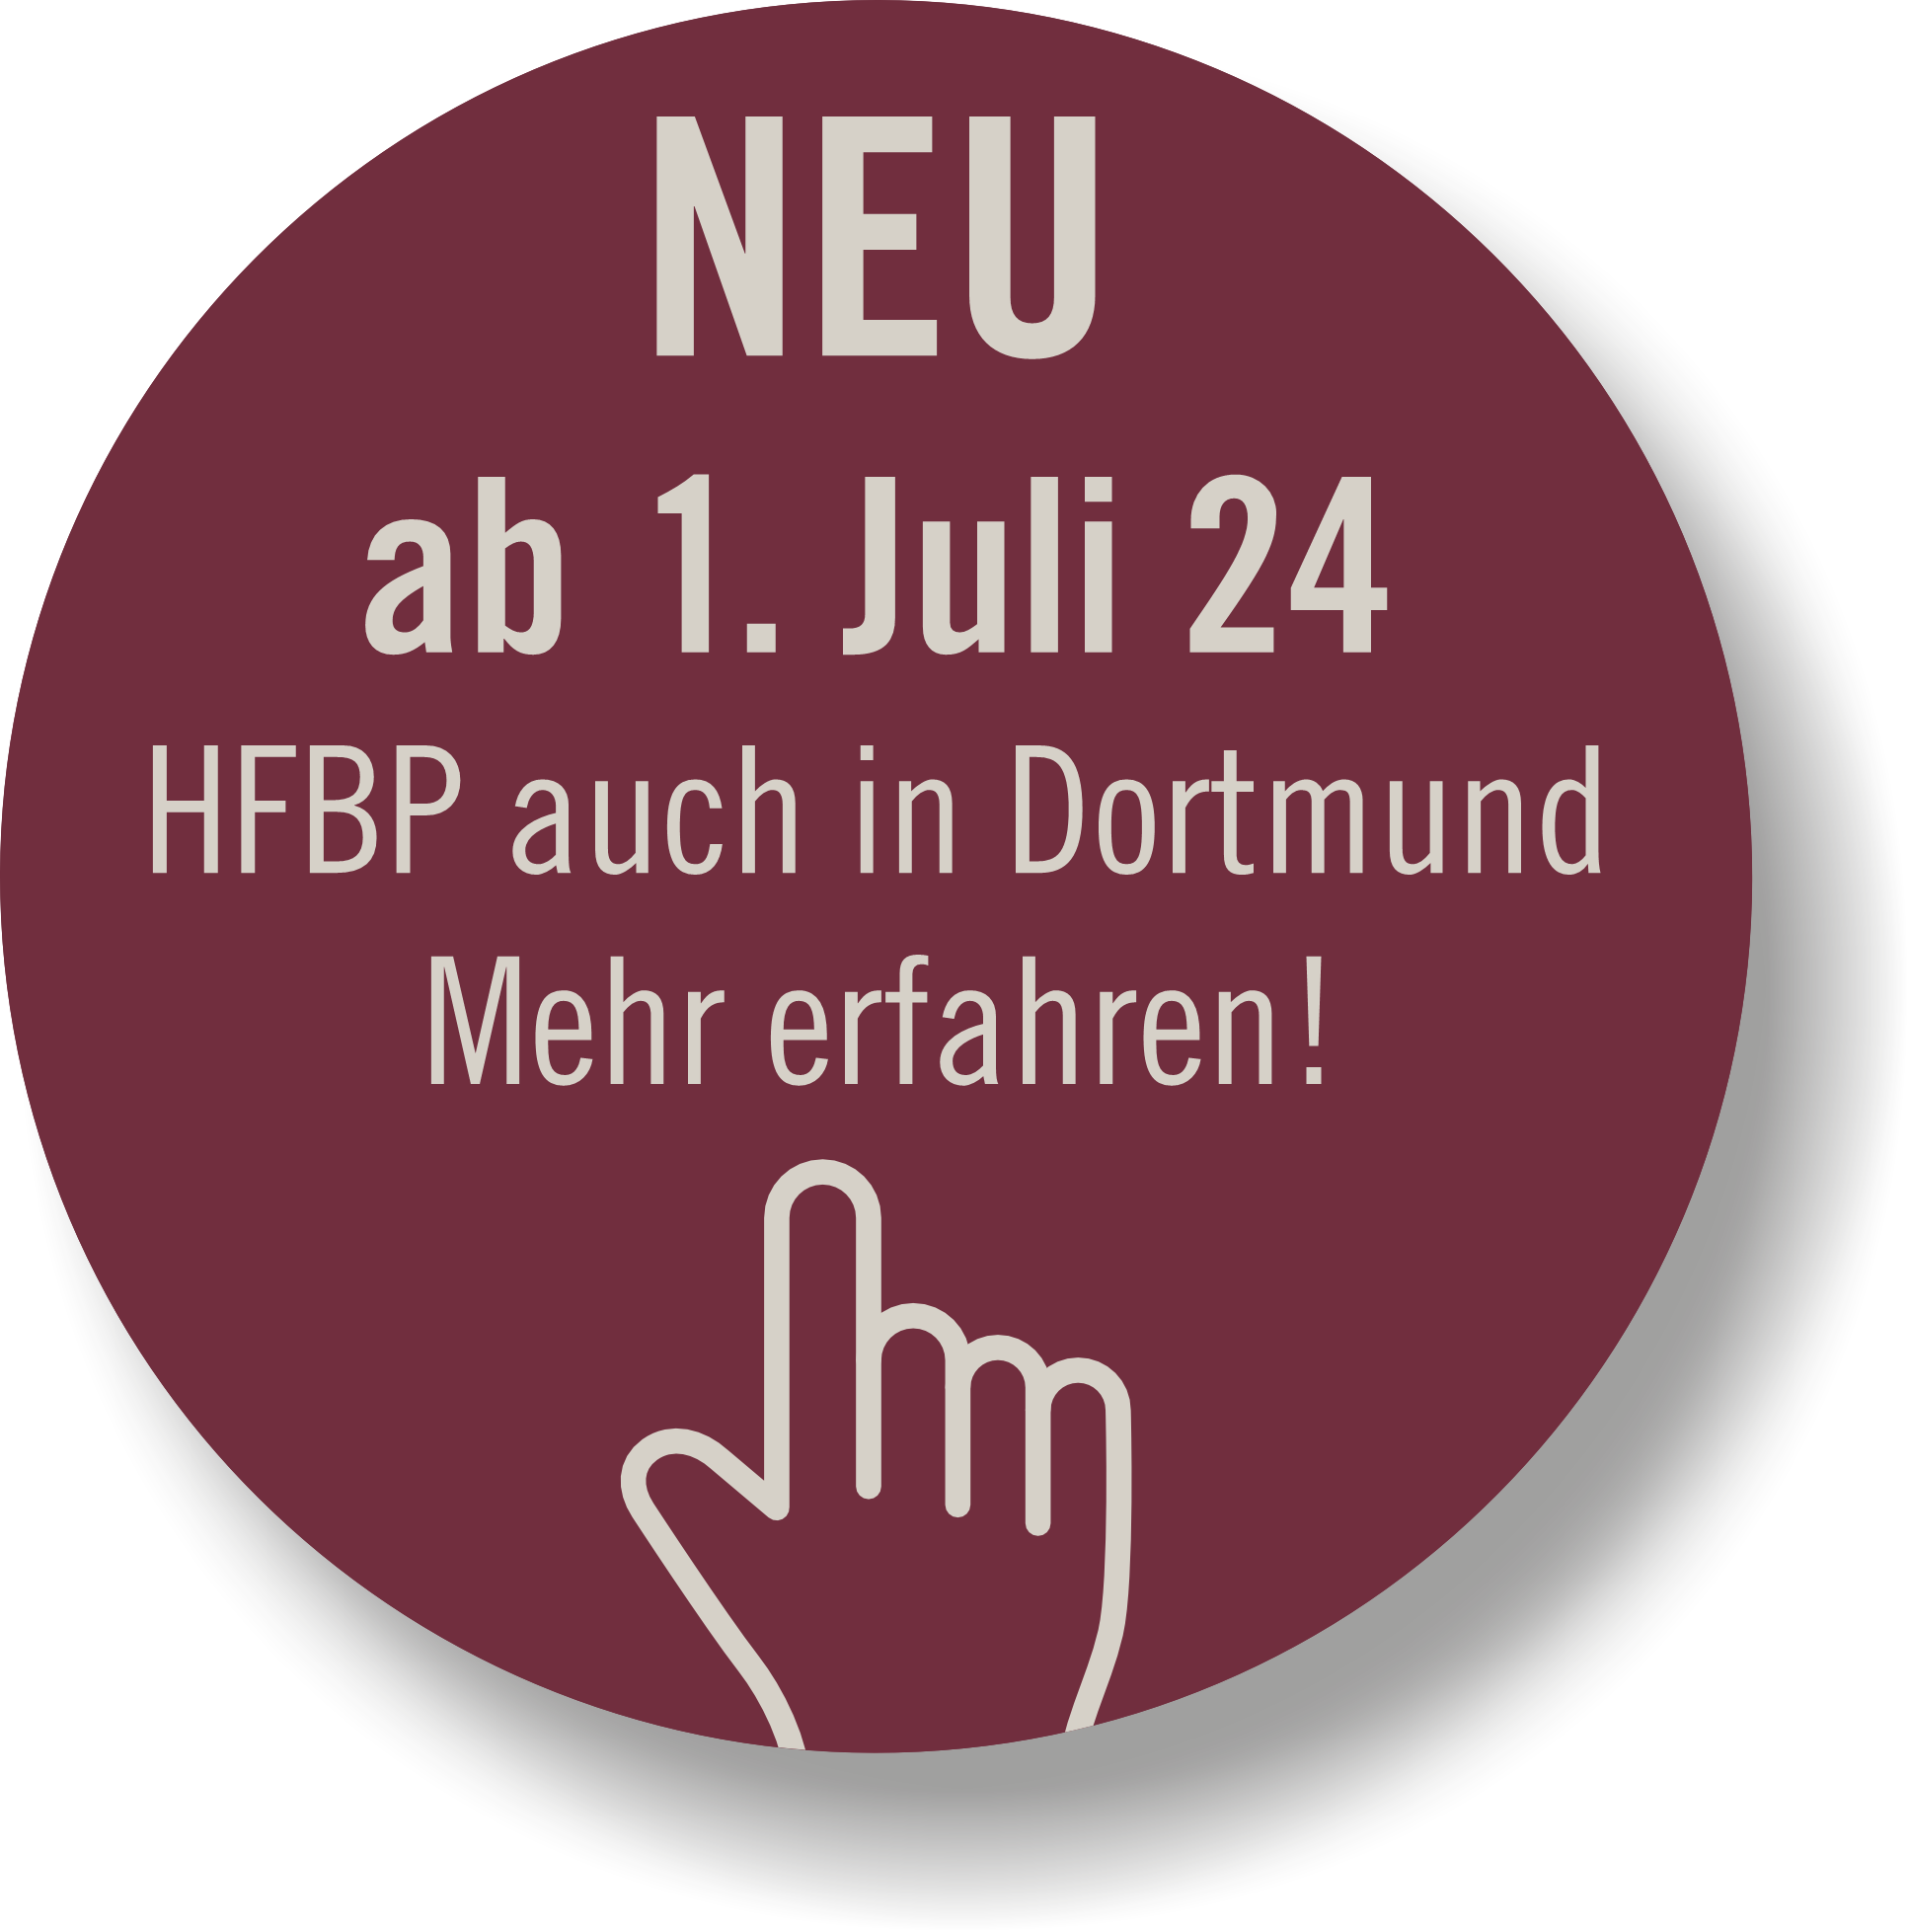 HFBP - Dortmund